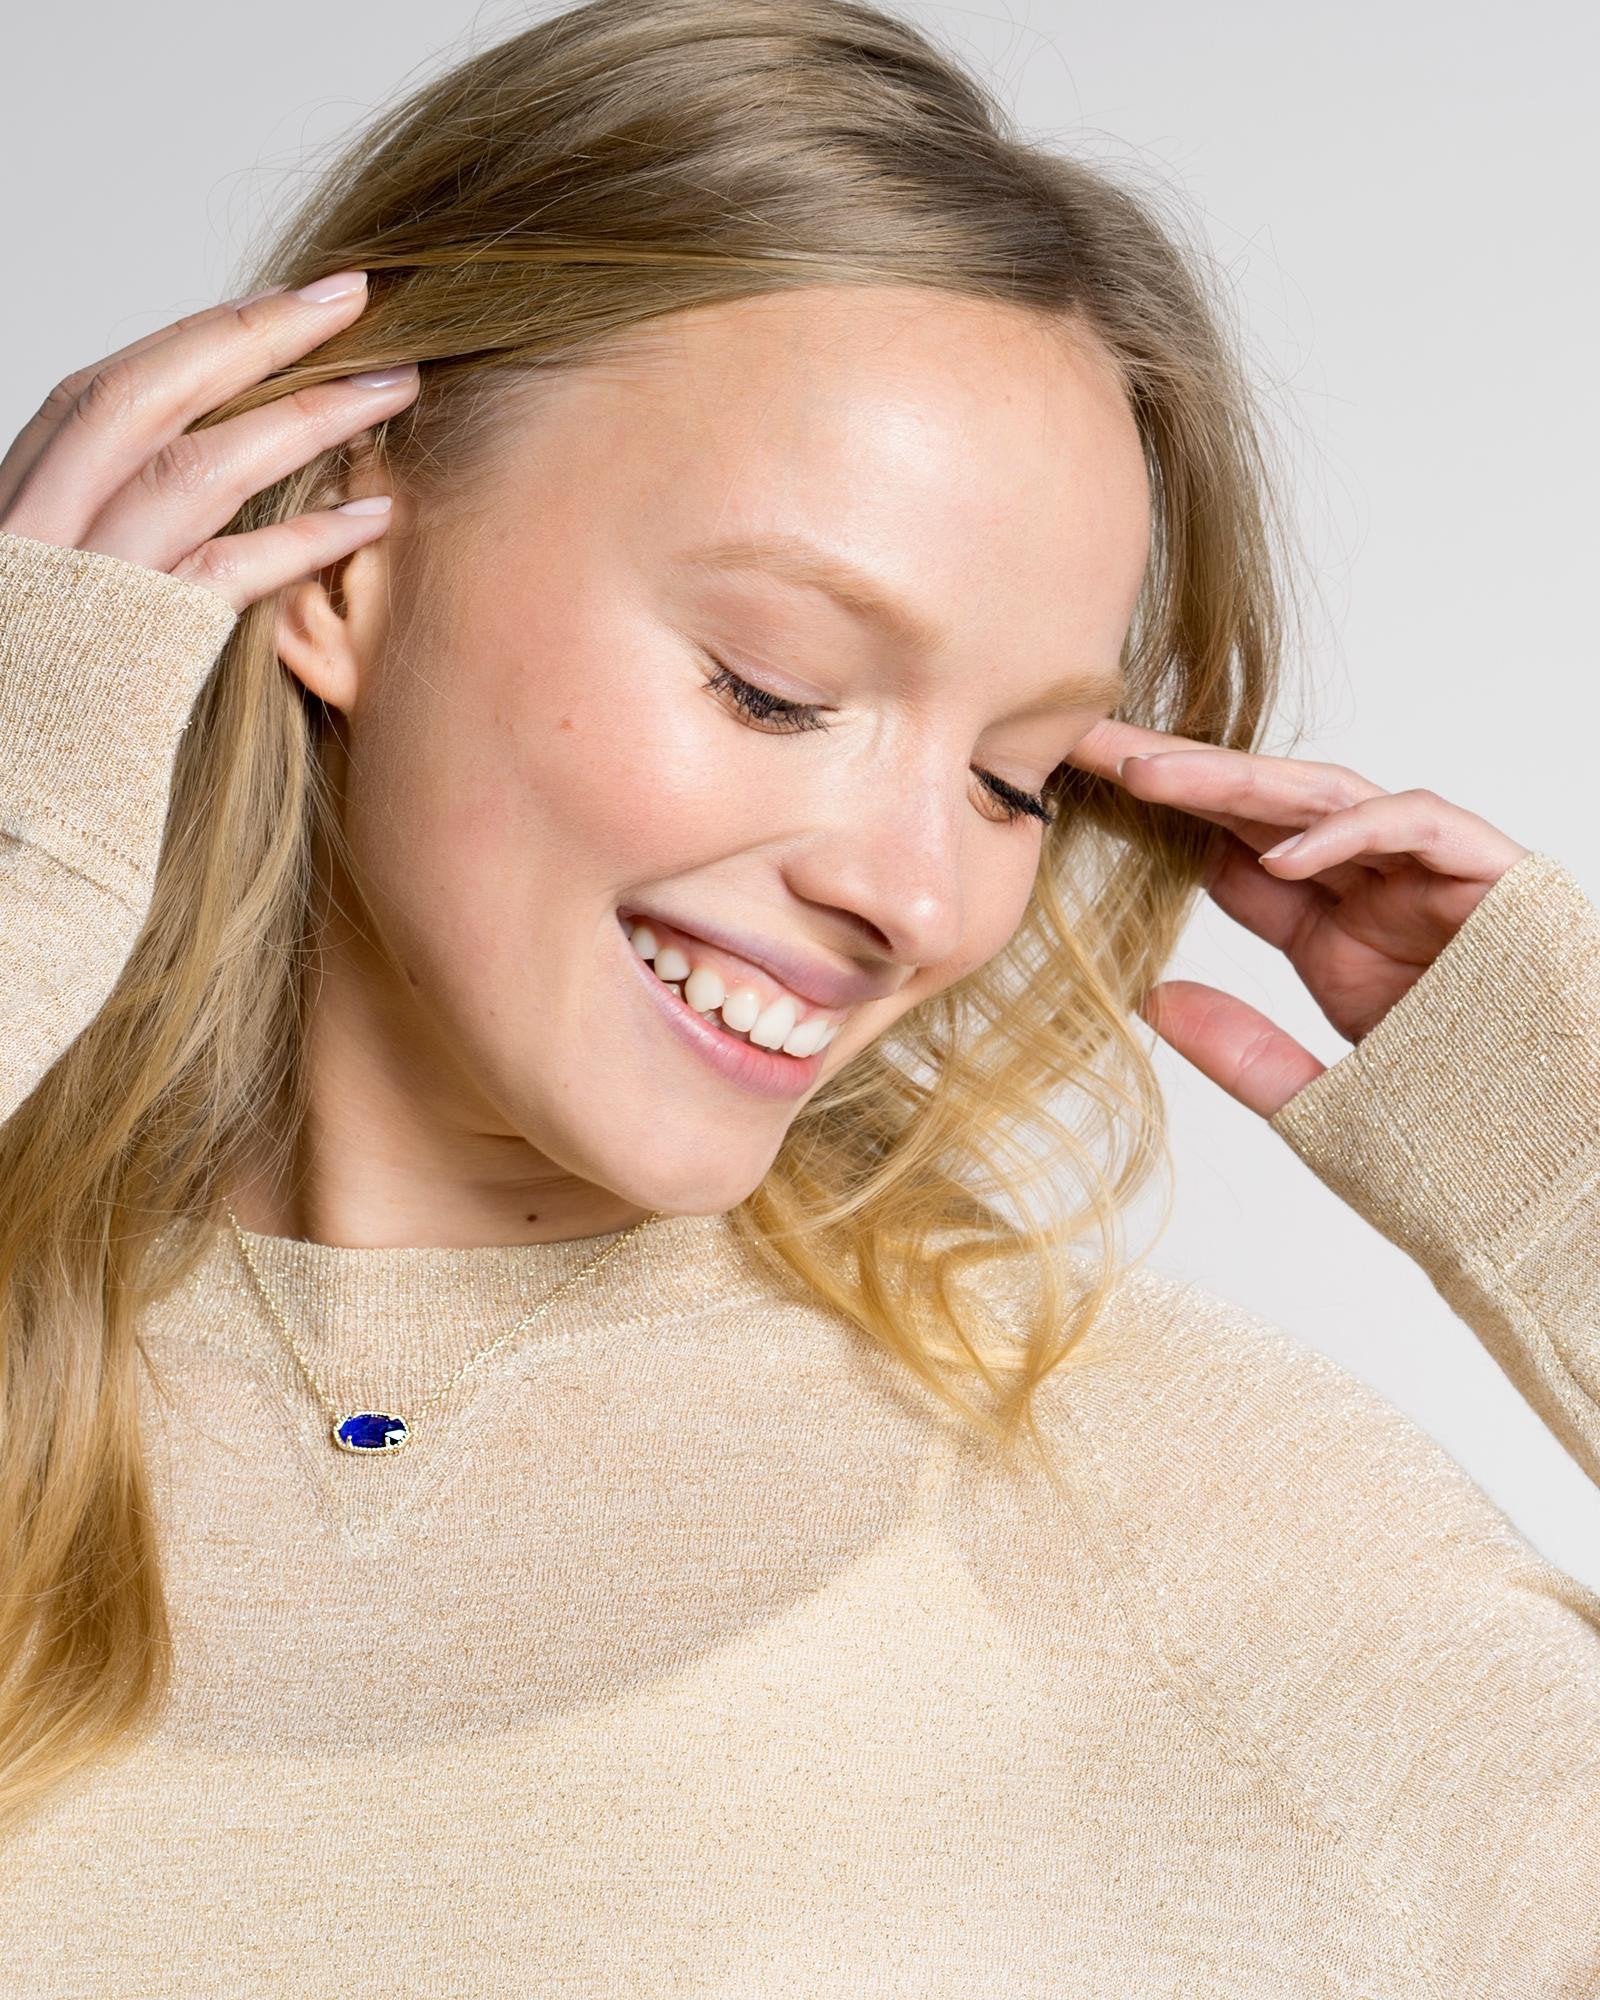 Elisa Silver Pendant Necklace in Amethyst | Kendra Scott